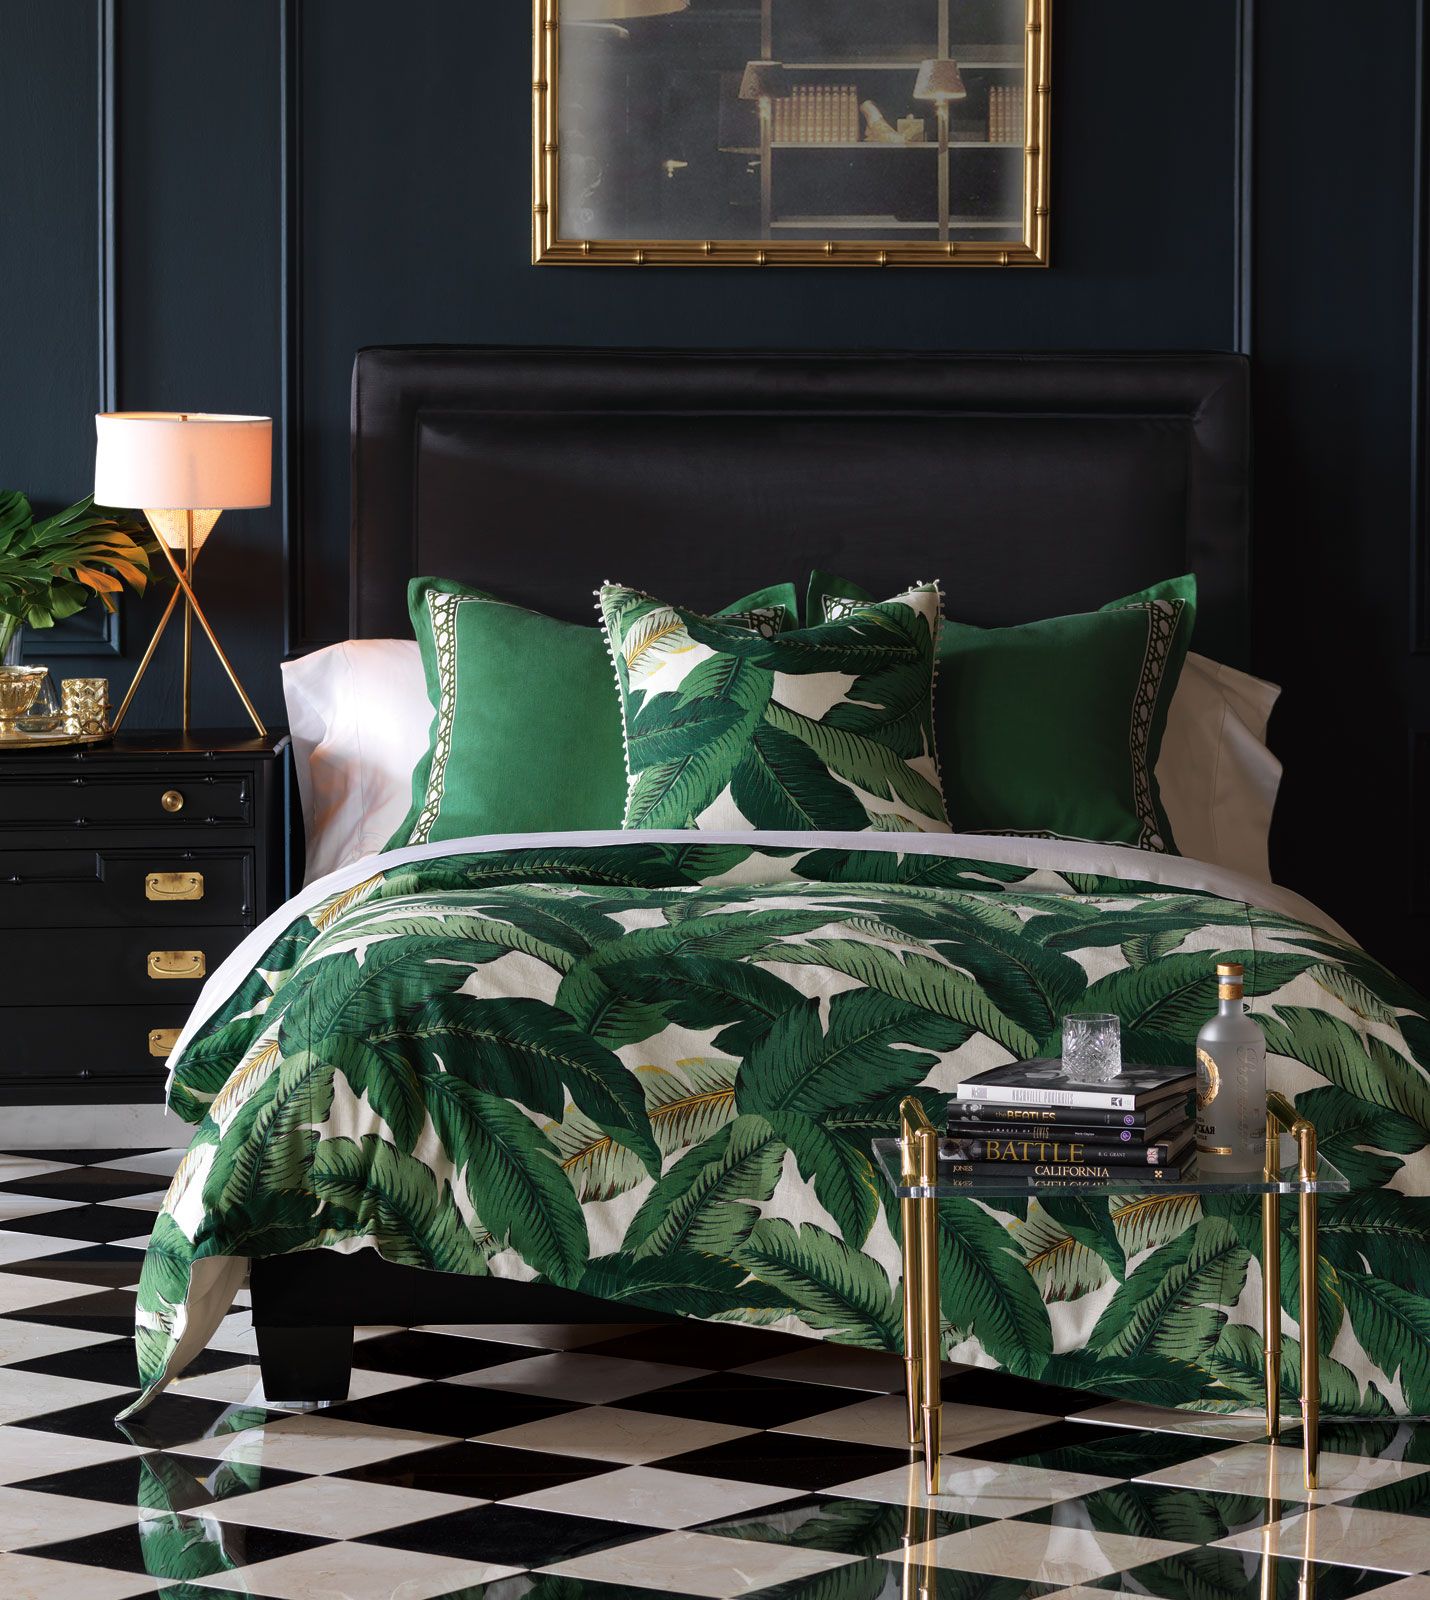 Chiếc giường toàn bộ được “bao phủ” bởi những lớp lá chuối xanh mướt.